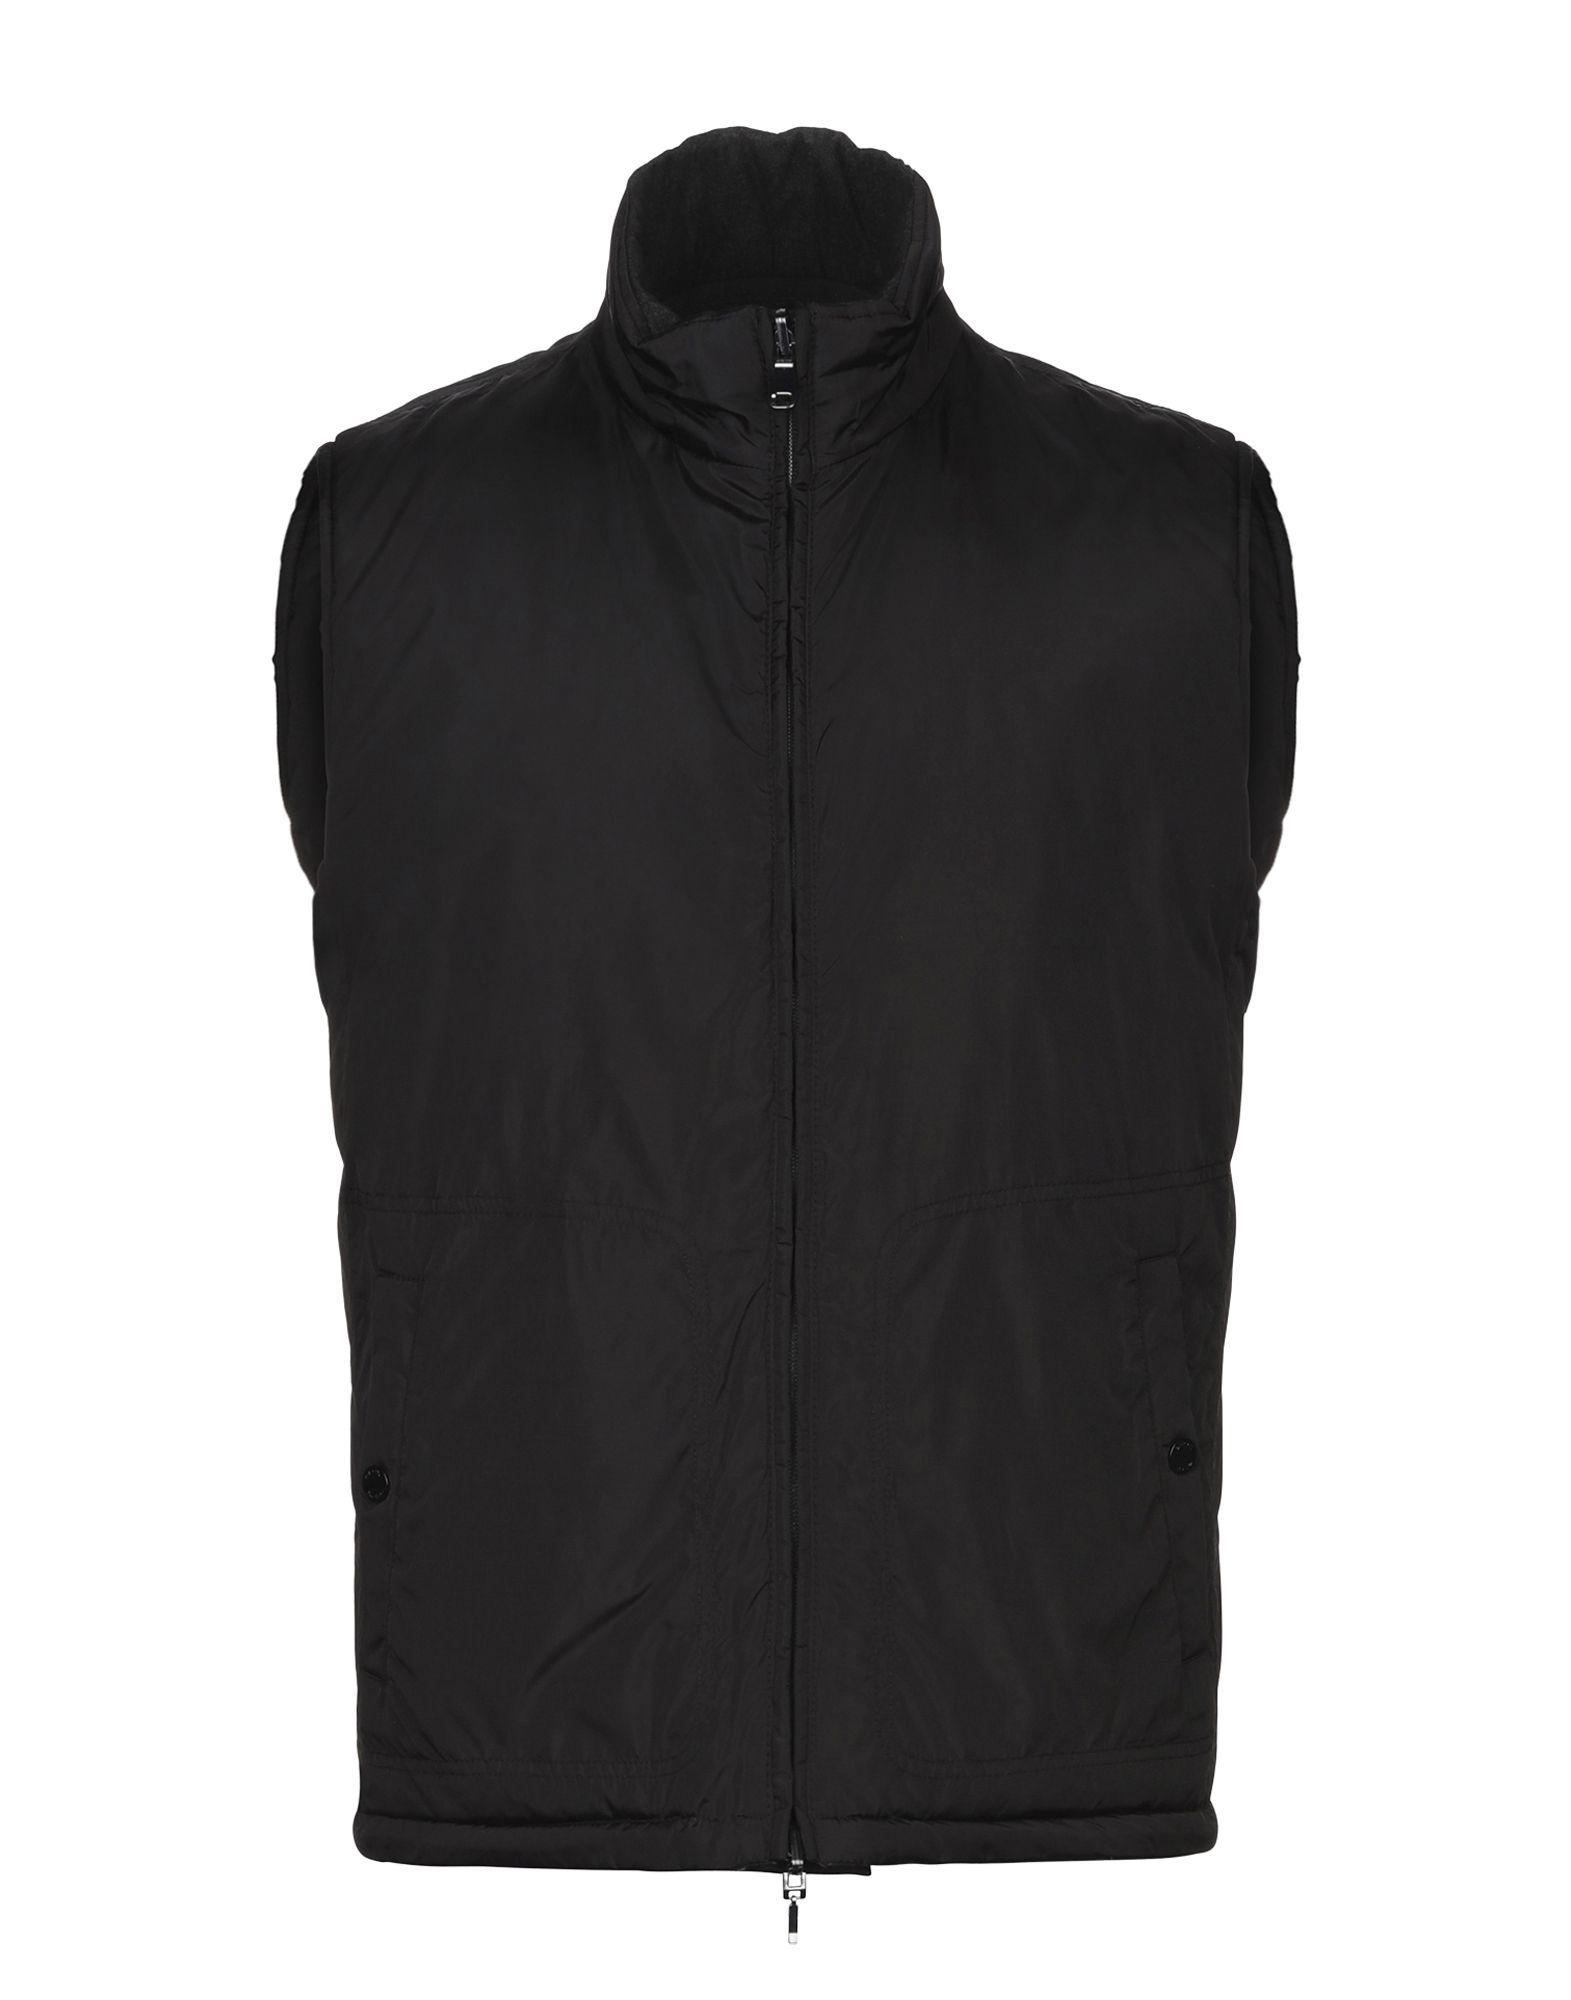 Geox Jacket in Black for Men - Lyst